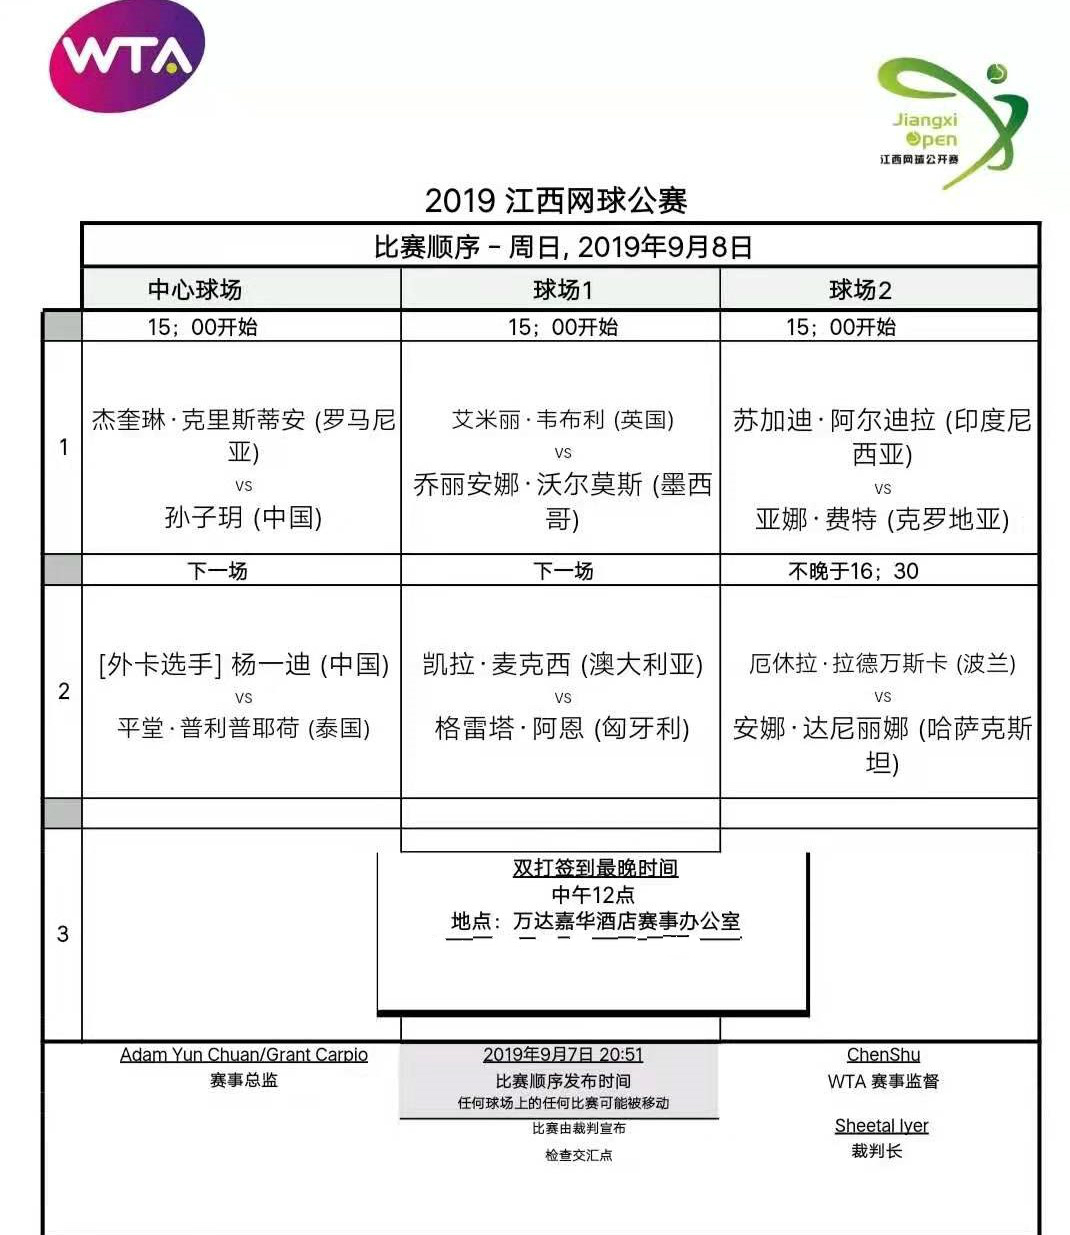 2019江西網球公開賽